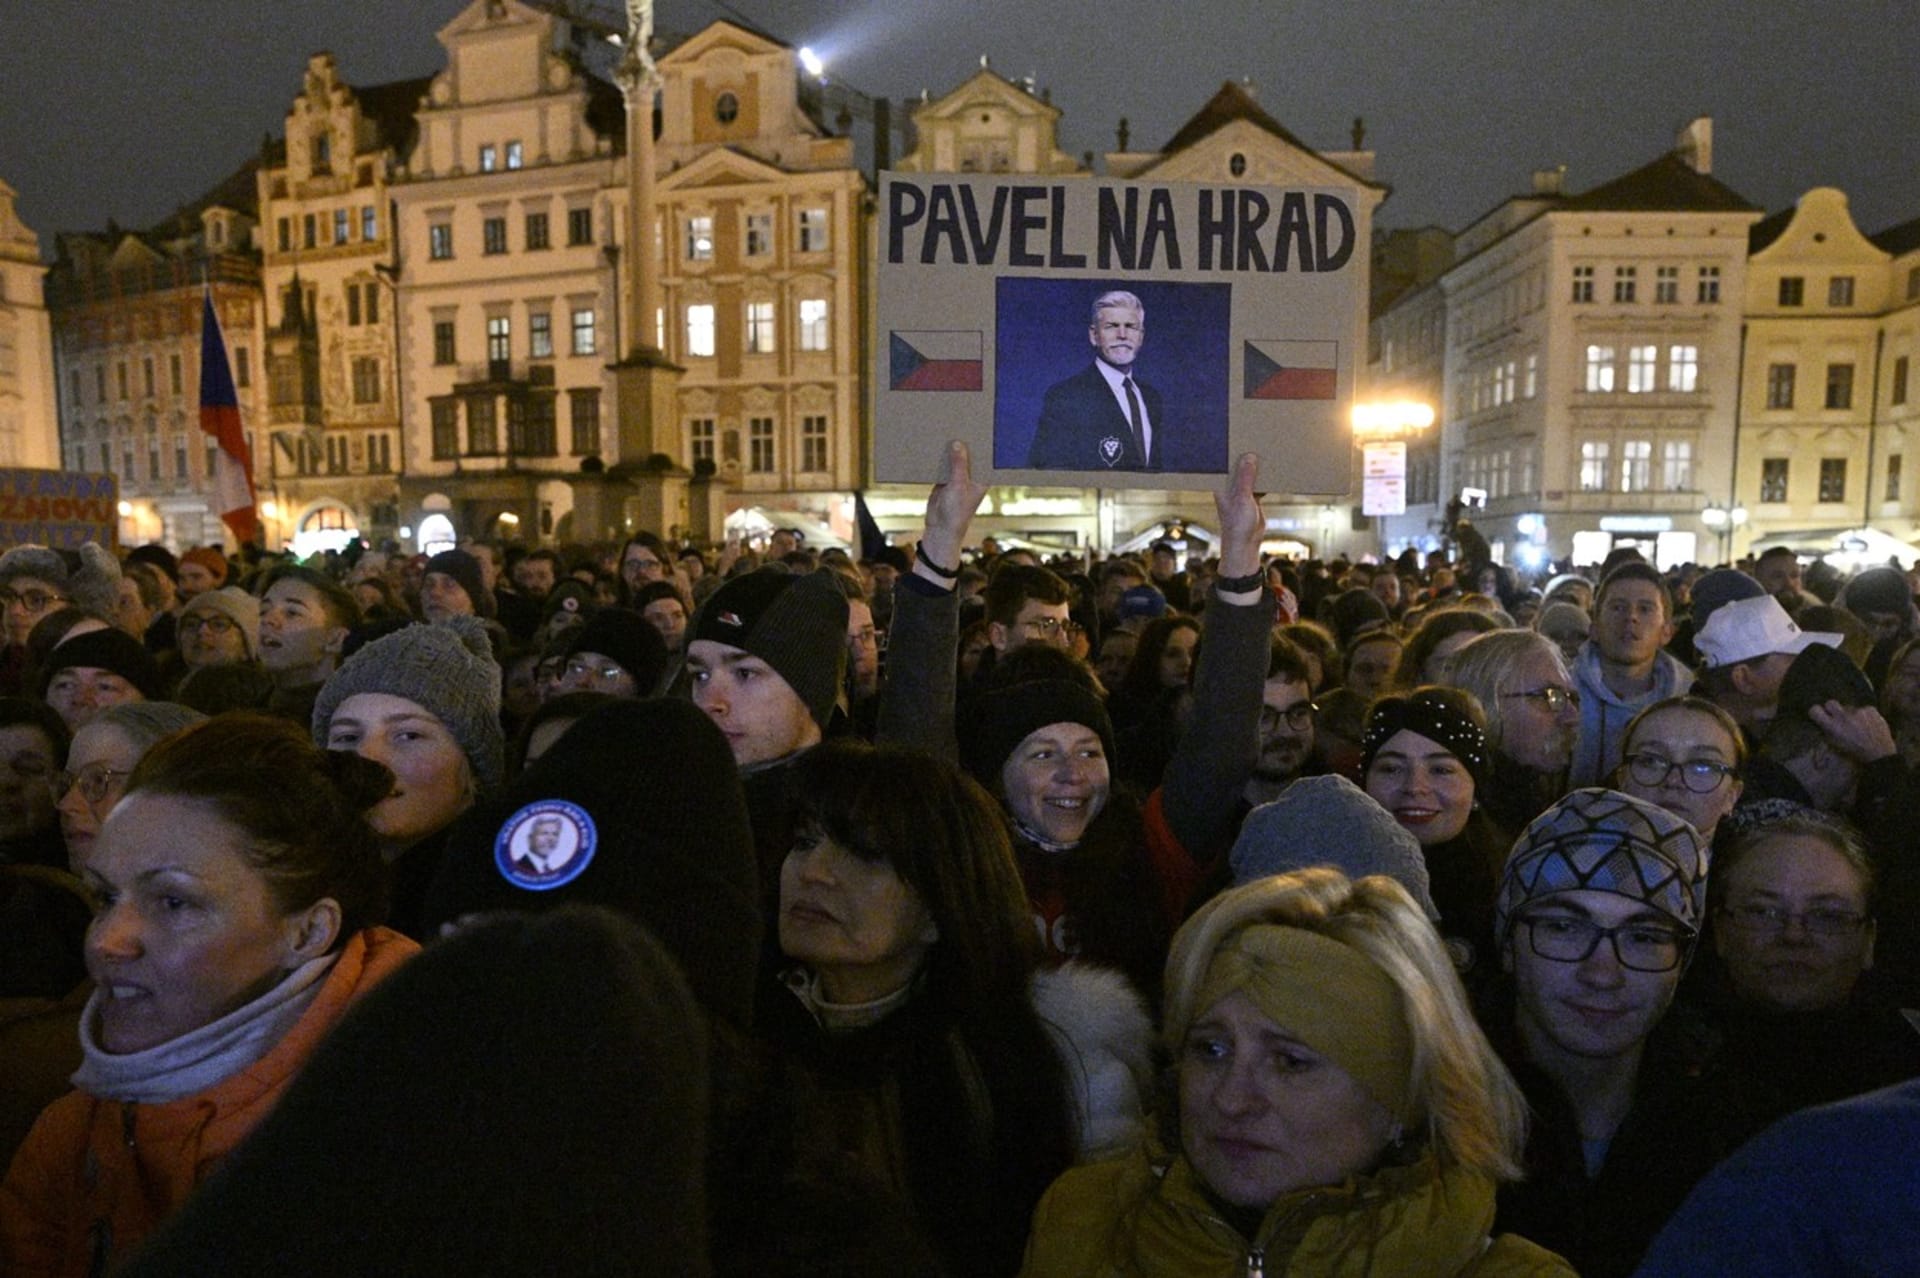 Tisíce lidí dorazily na závěrečnou akci prezidentského kandidáta Petra Pavla na Staroměstském náměstí v Praze.